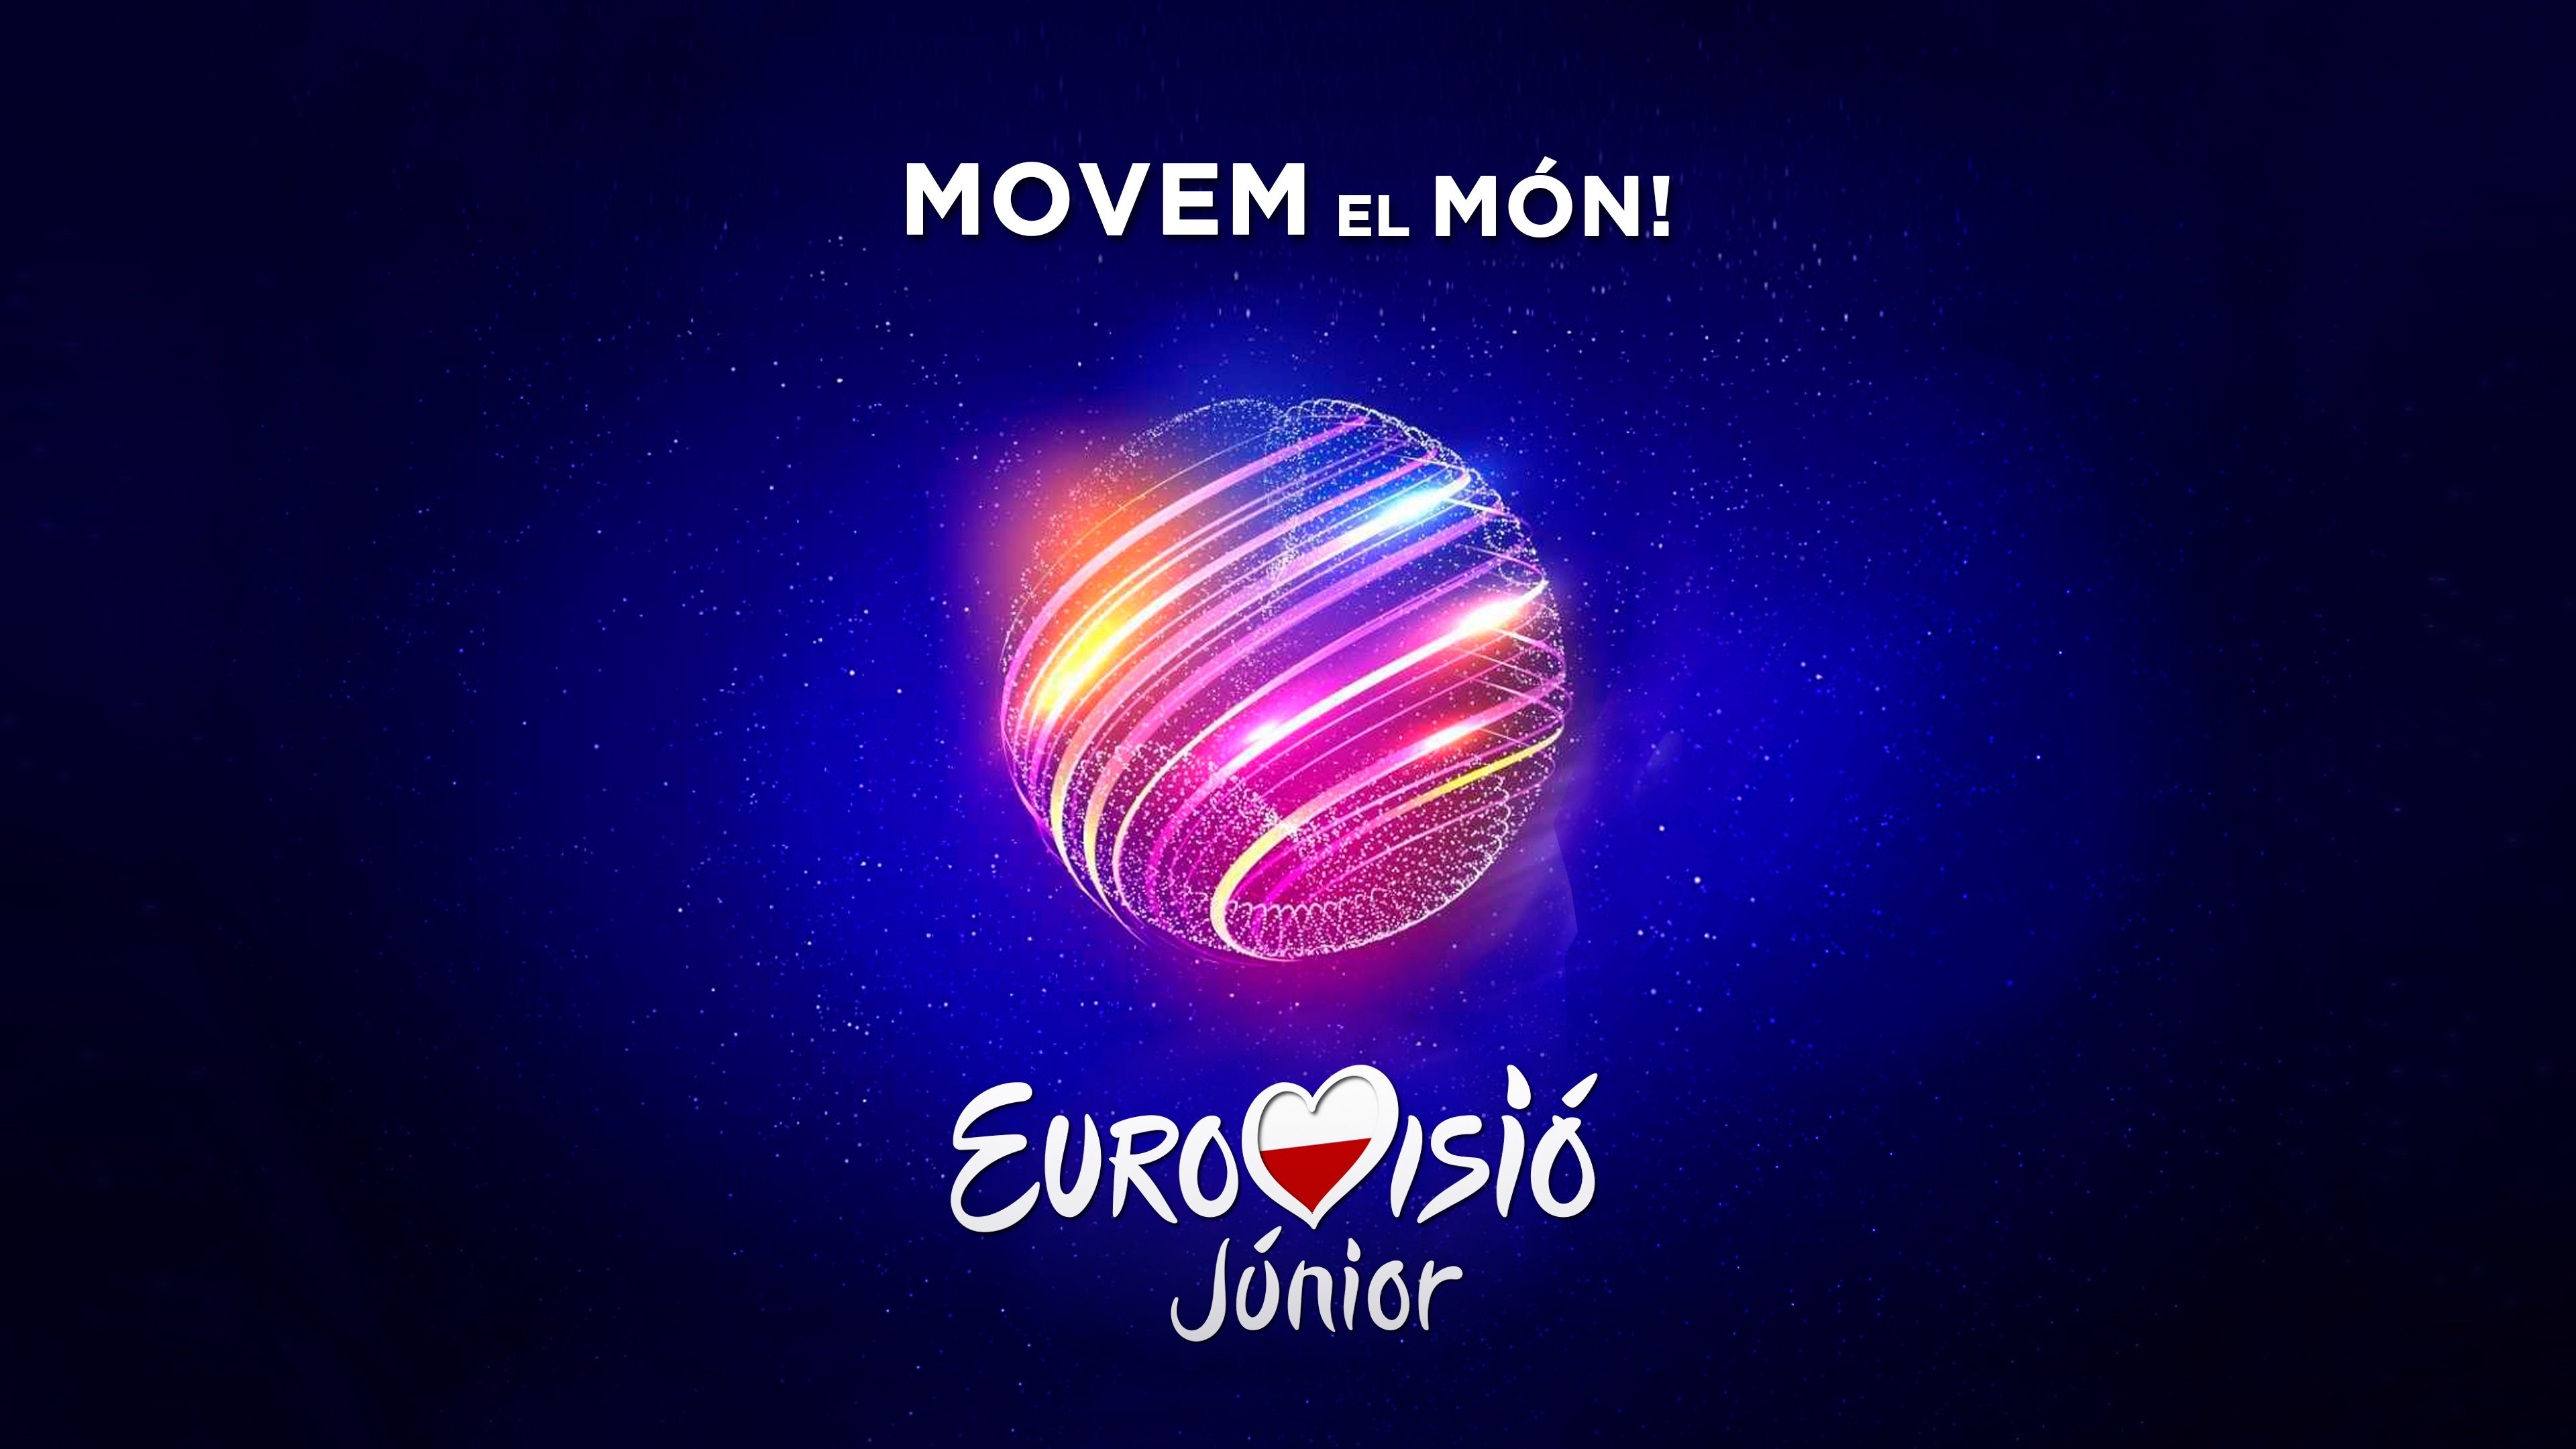 Espanya ja busca el seu representant per a Eurovisió Júnior 2020